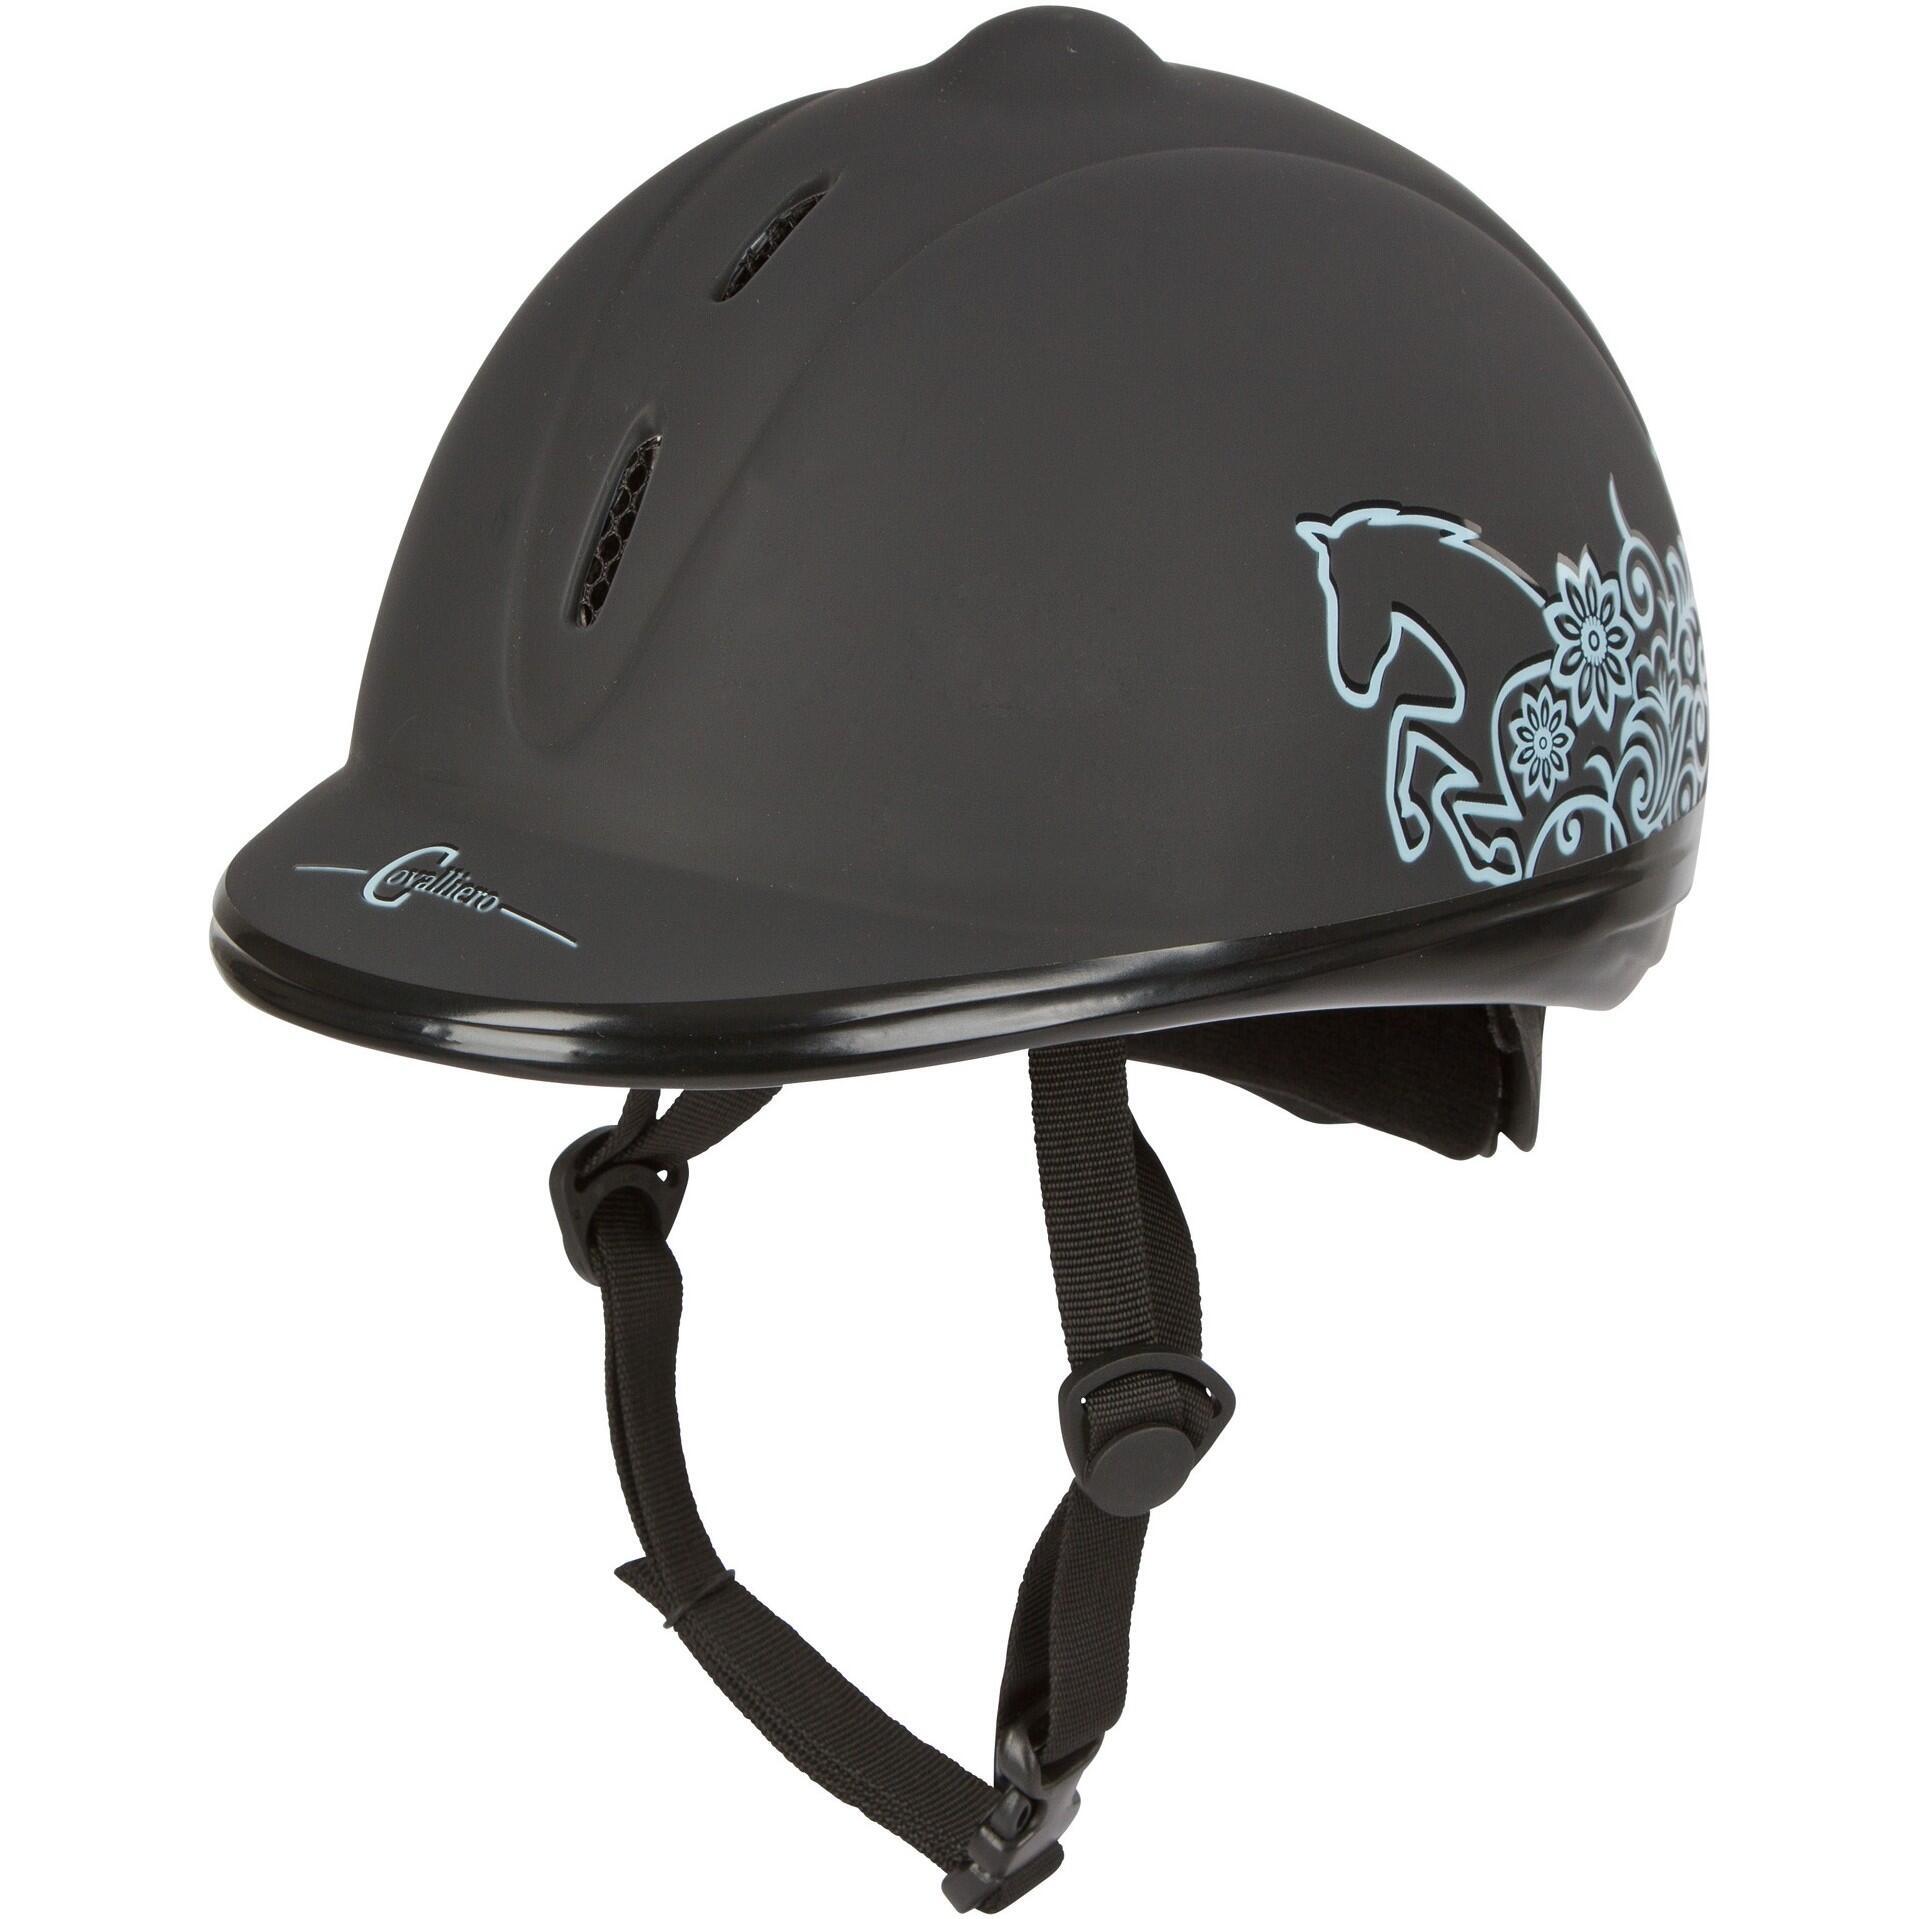 Шлем COVALLIERO BEAUTY для верховой езды, черный шлем для верховой езды младшего возраста классический британский защитный шлем с бриллиантами бархатный дышащий шлем